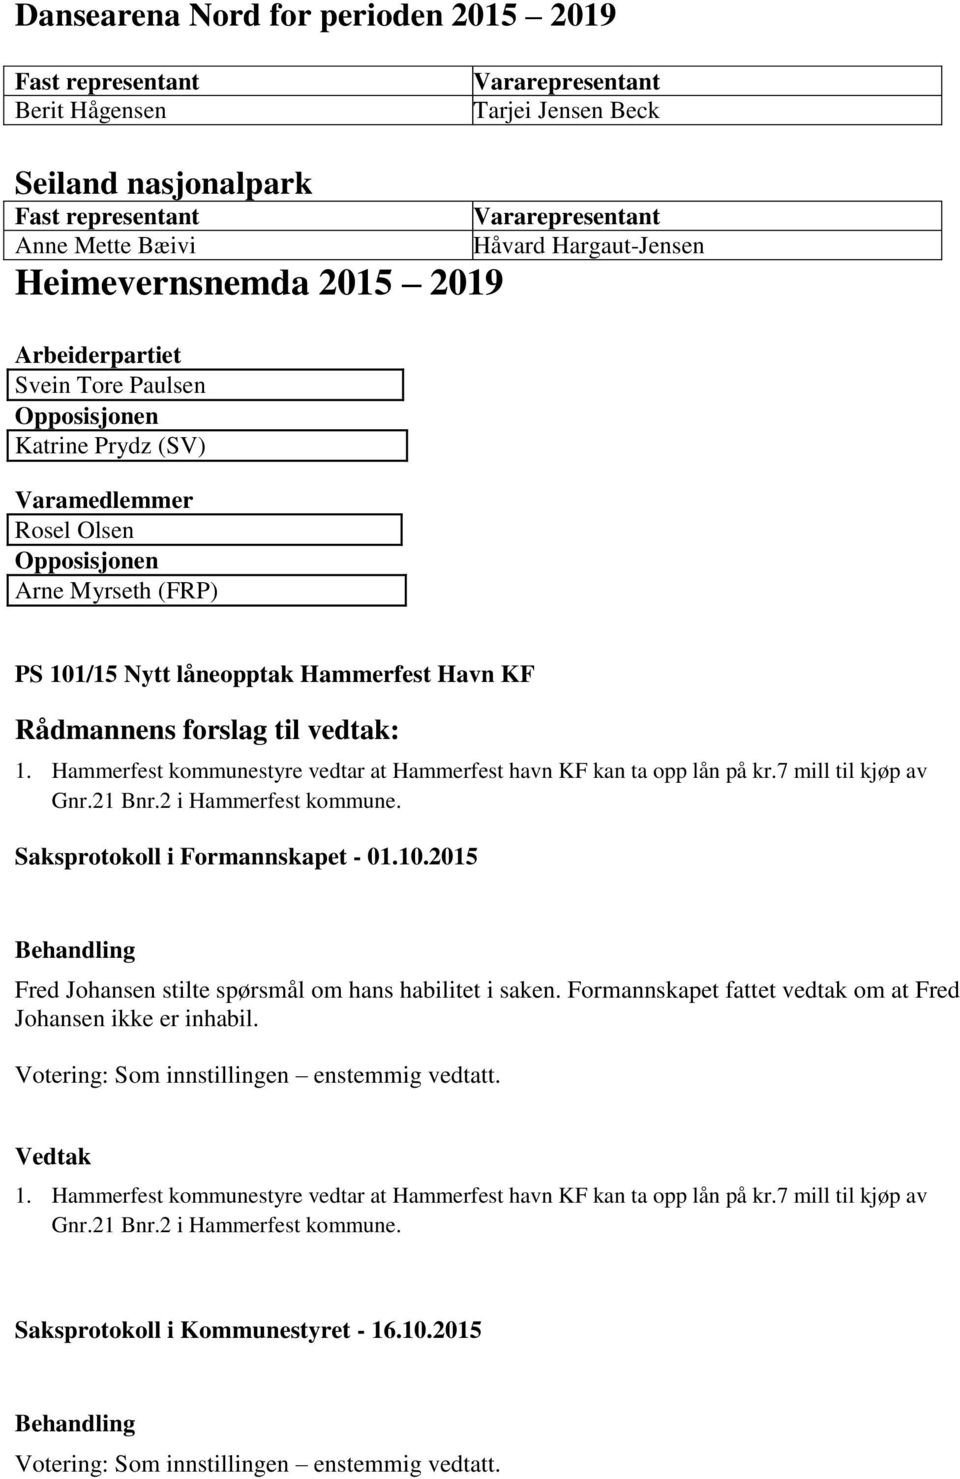 Hammerfest kommunestyre vedtar at Hammerfest havn KF kan ta opp lån på kr.7 mill til kjøp av Gnr.21 Bnr.2 i Hammerfest kommune. Saksprotokoll i Formannskapet - 01.10.